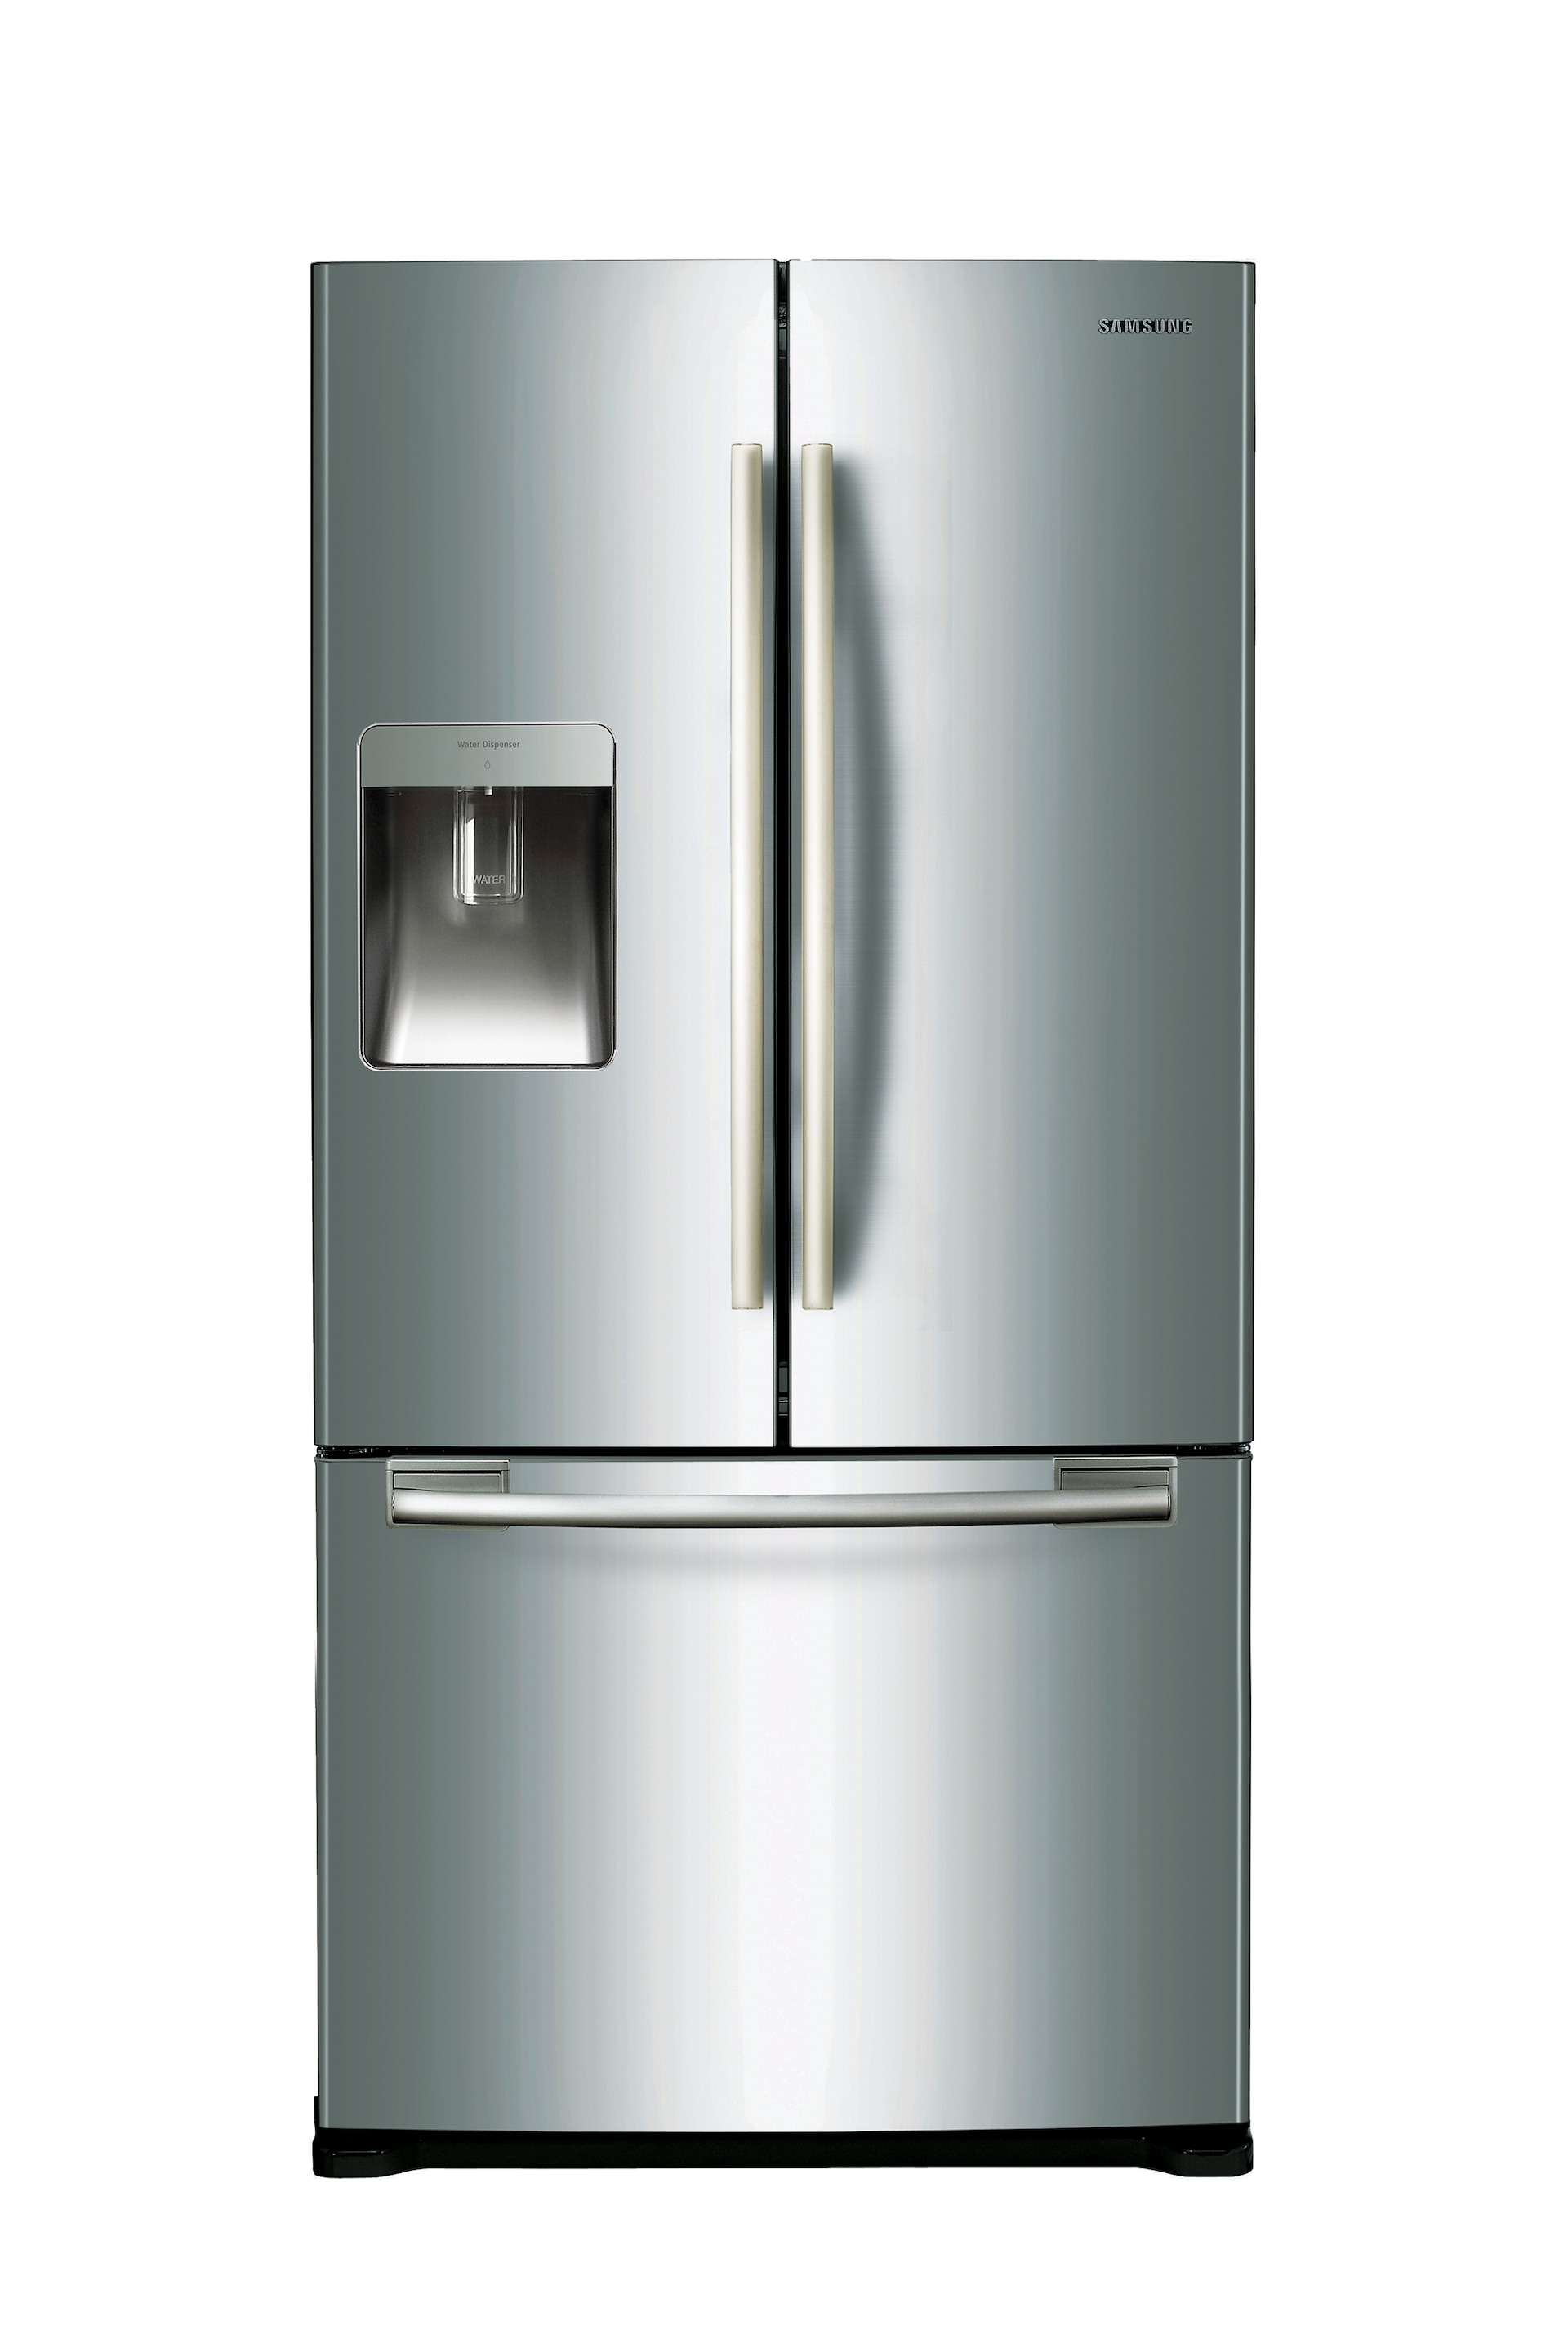 579L French Door Refrigerator - SRF579DLS | Samsung Support Australia